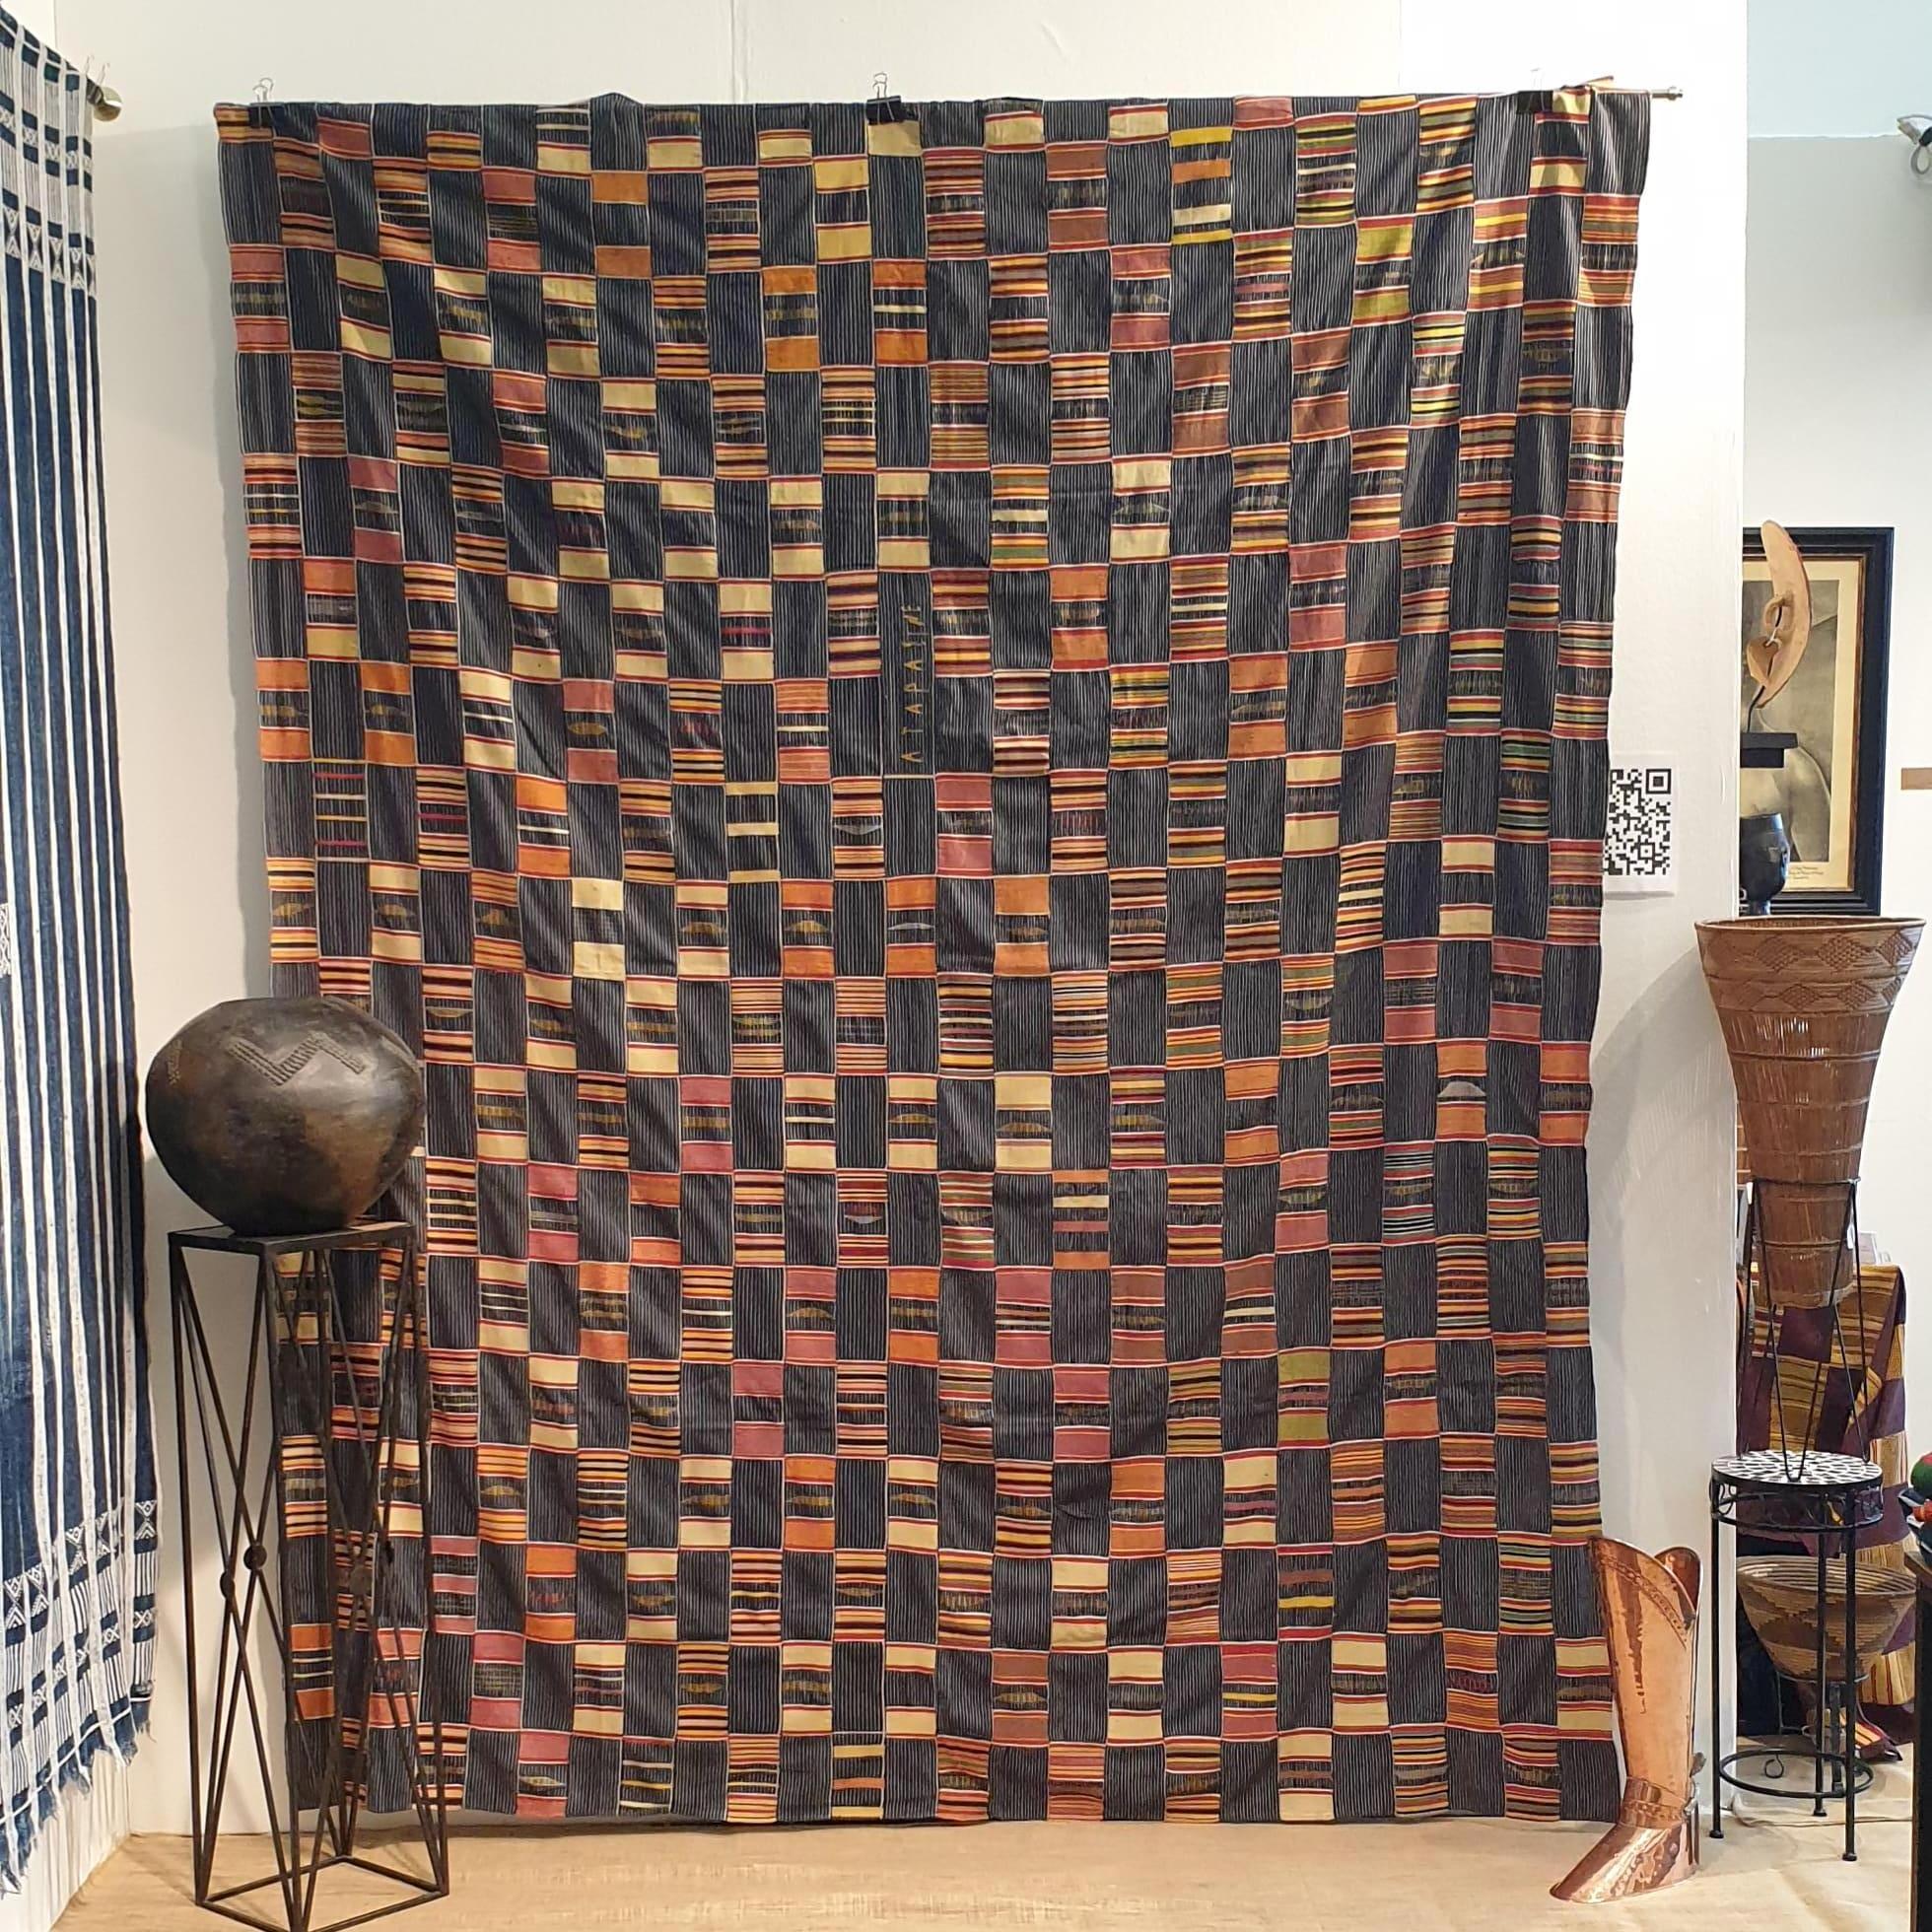 Dies ist ein schönes Stück Kente-Textil vom Volk der Ewe in der Volta-Region in Ghana. Aus handgesponnener Baumwolle und natürlichen Farbstoffen gewebt. Dies ist ein Prestigetuch, das von einem hochrangigen Ältesten des Ewe-Volkes getragen wird. Das